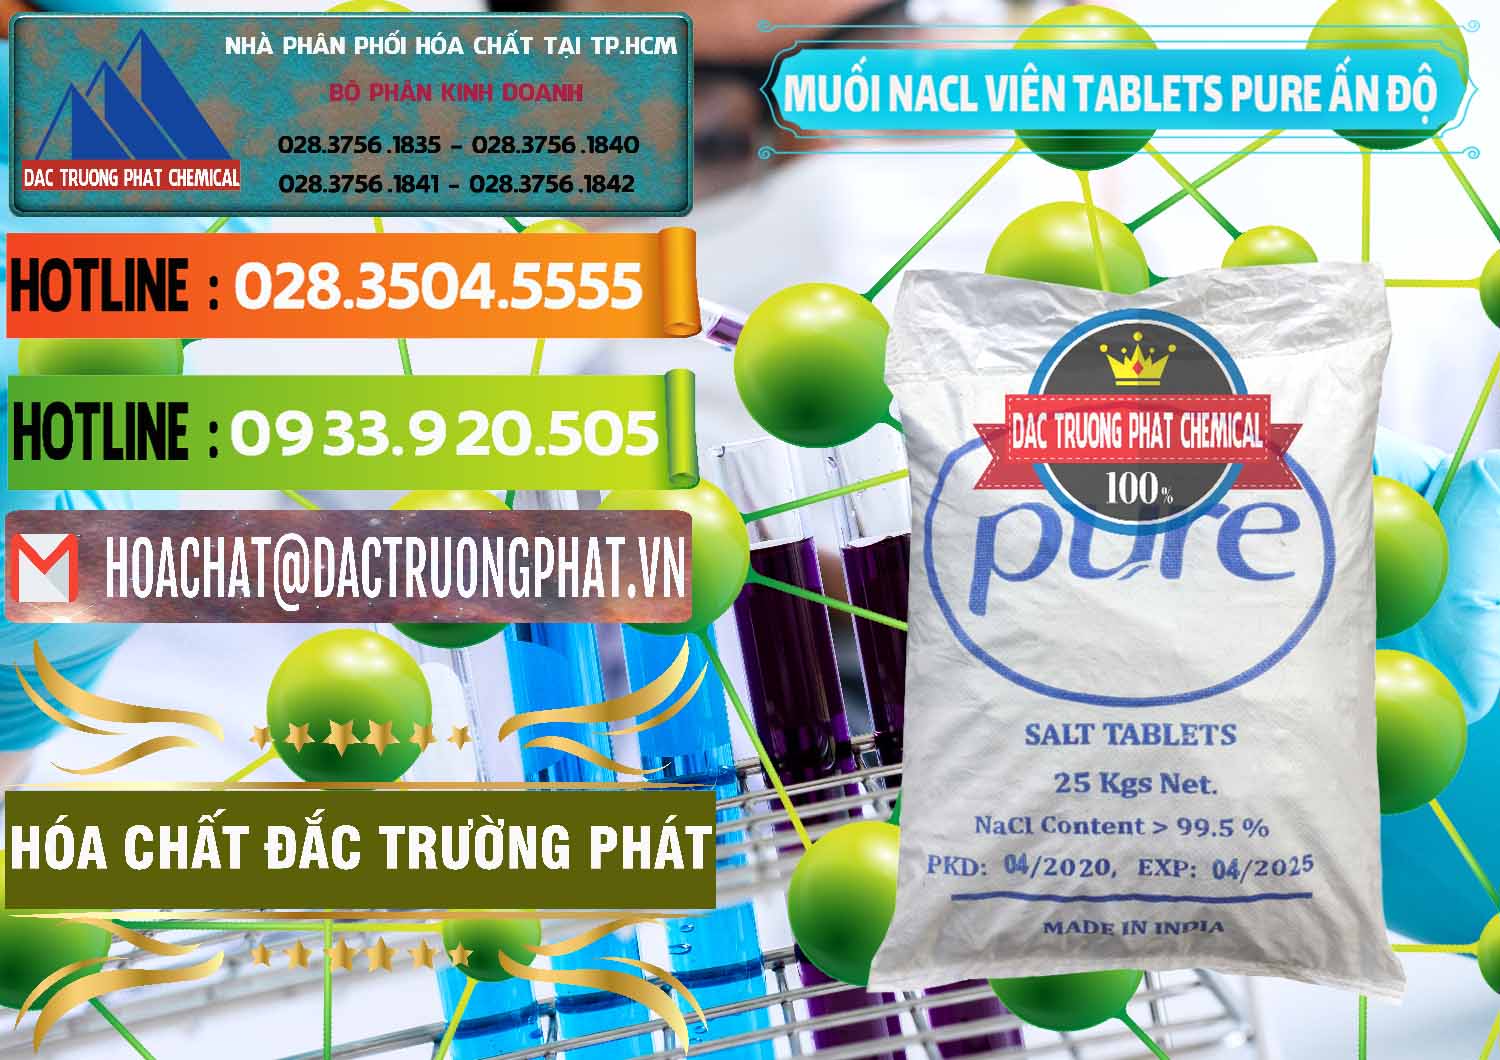 Nơi cung cấp _ bán Muối NaCL – Sodium Chloride Dạng Viên Tablets Pure Ấn Độ India - 0294 - Nơi cung cấp & bán hóa chất tại TP.HCM - cungcaphoachat.com.vn